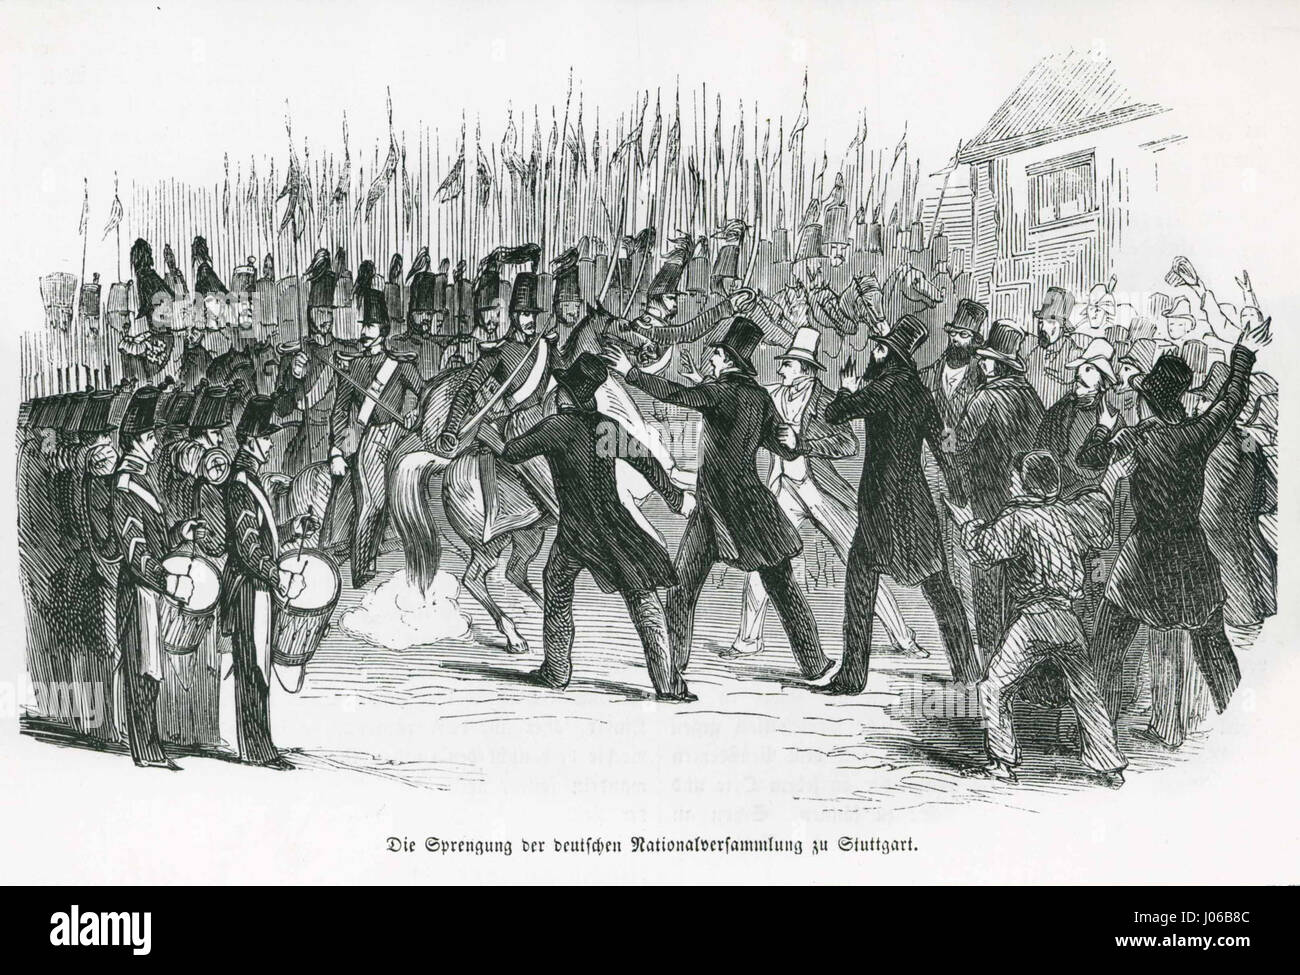 Württembergisches Militär im Einsatz gegen das Rumpfparlament 1849 Stock Photo